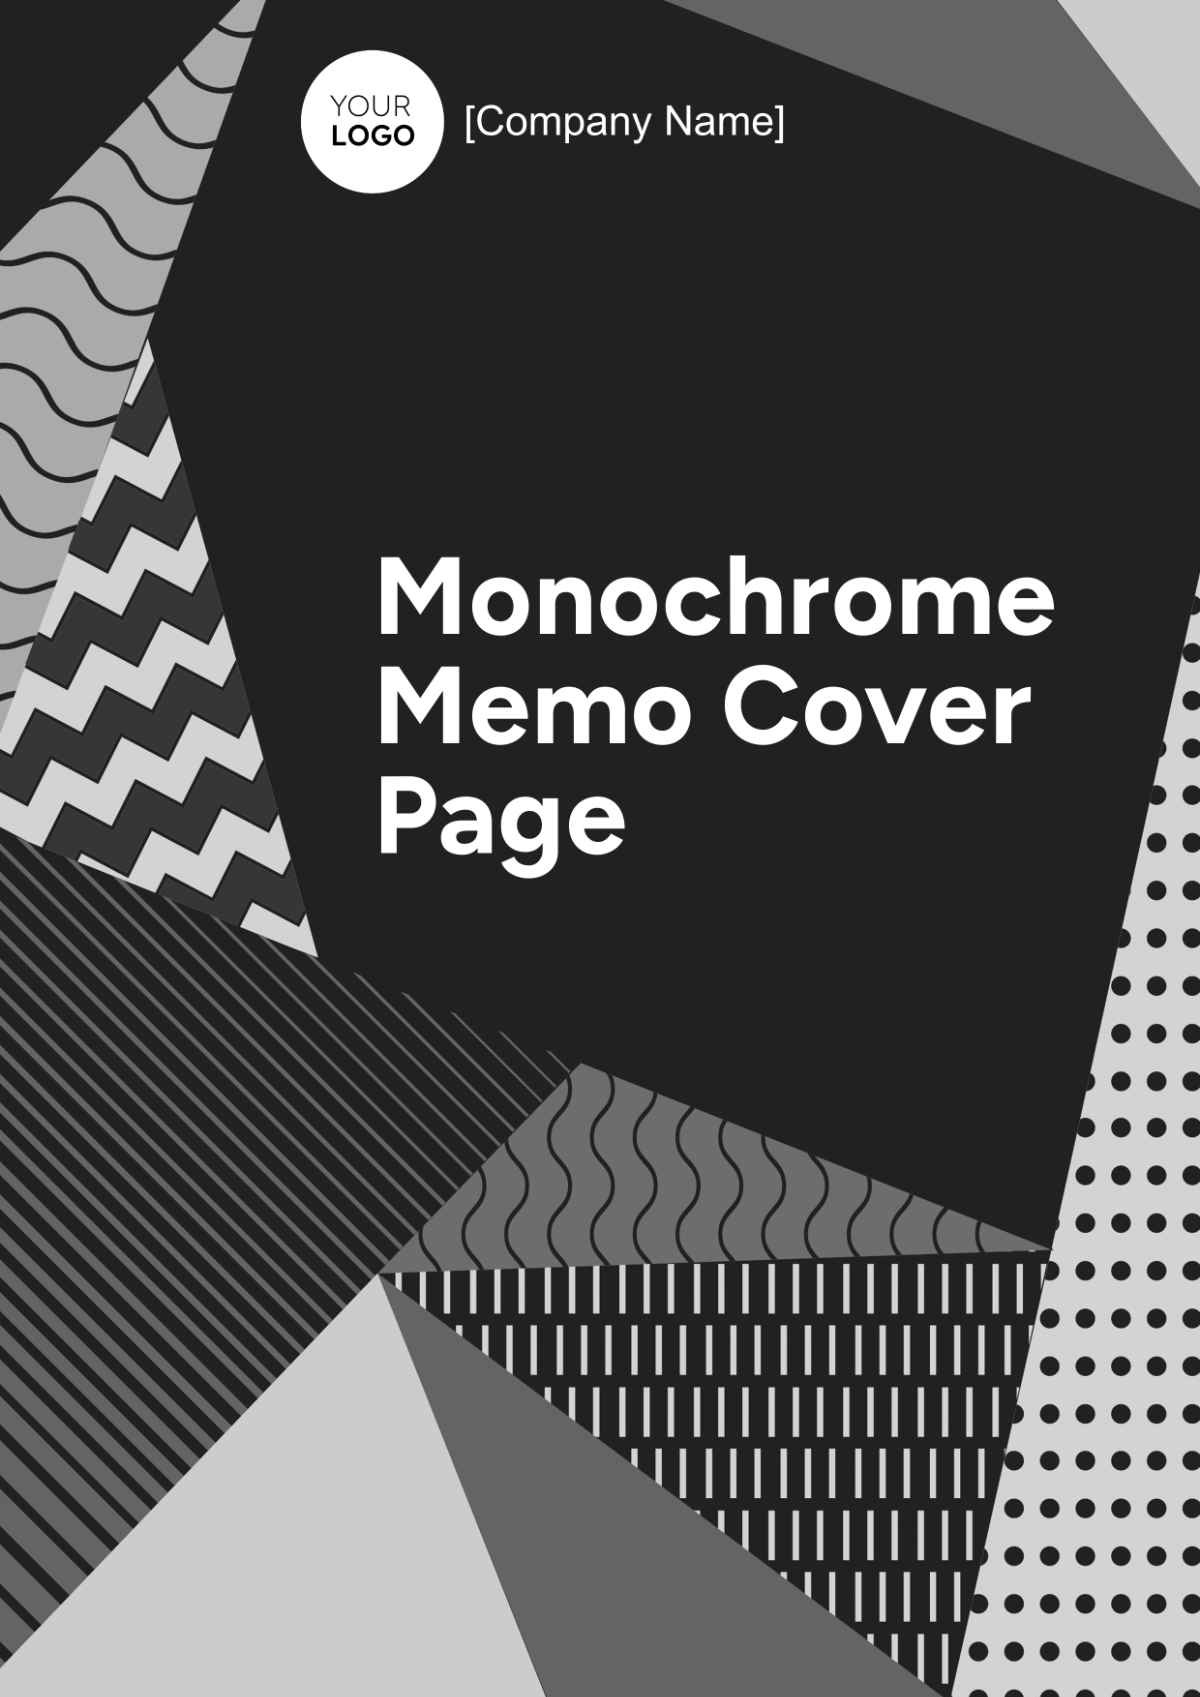 Monochrome Memo Cover Page Template